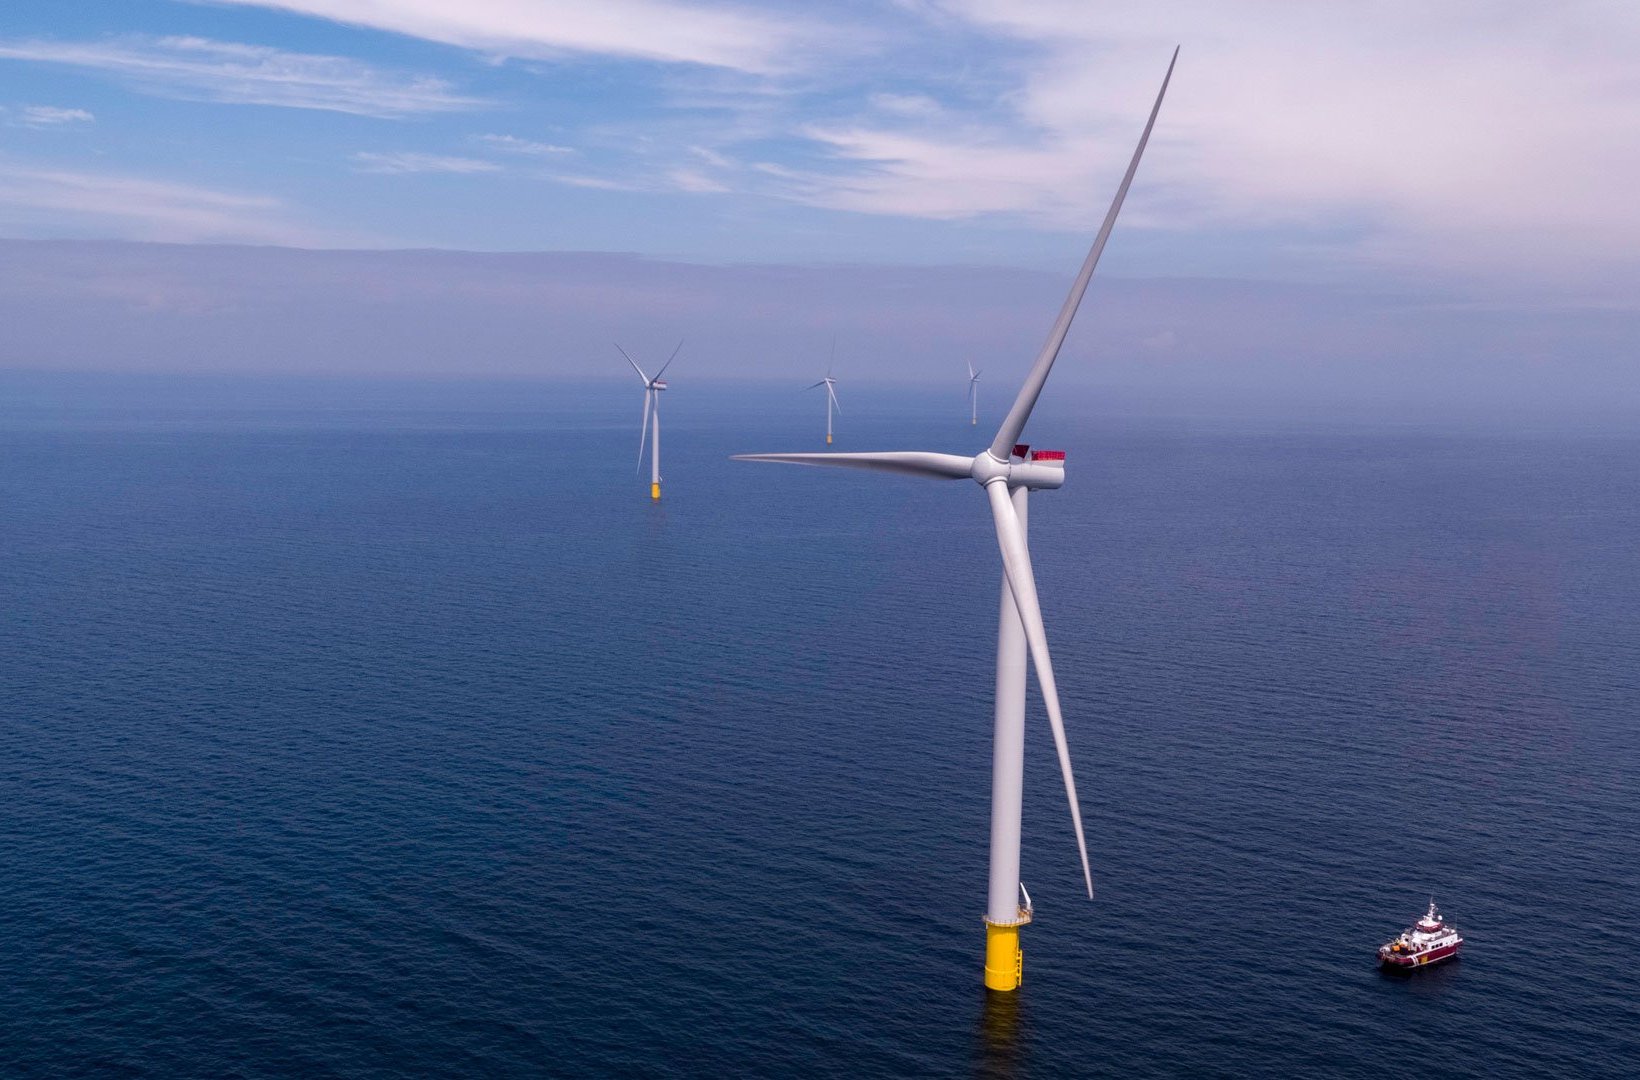 Kriegers Flak offshore wind farm in the Baltic Sea